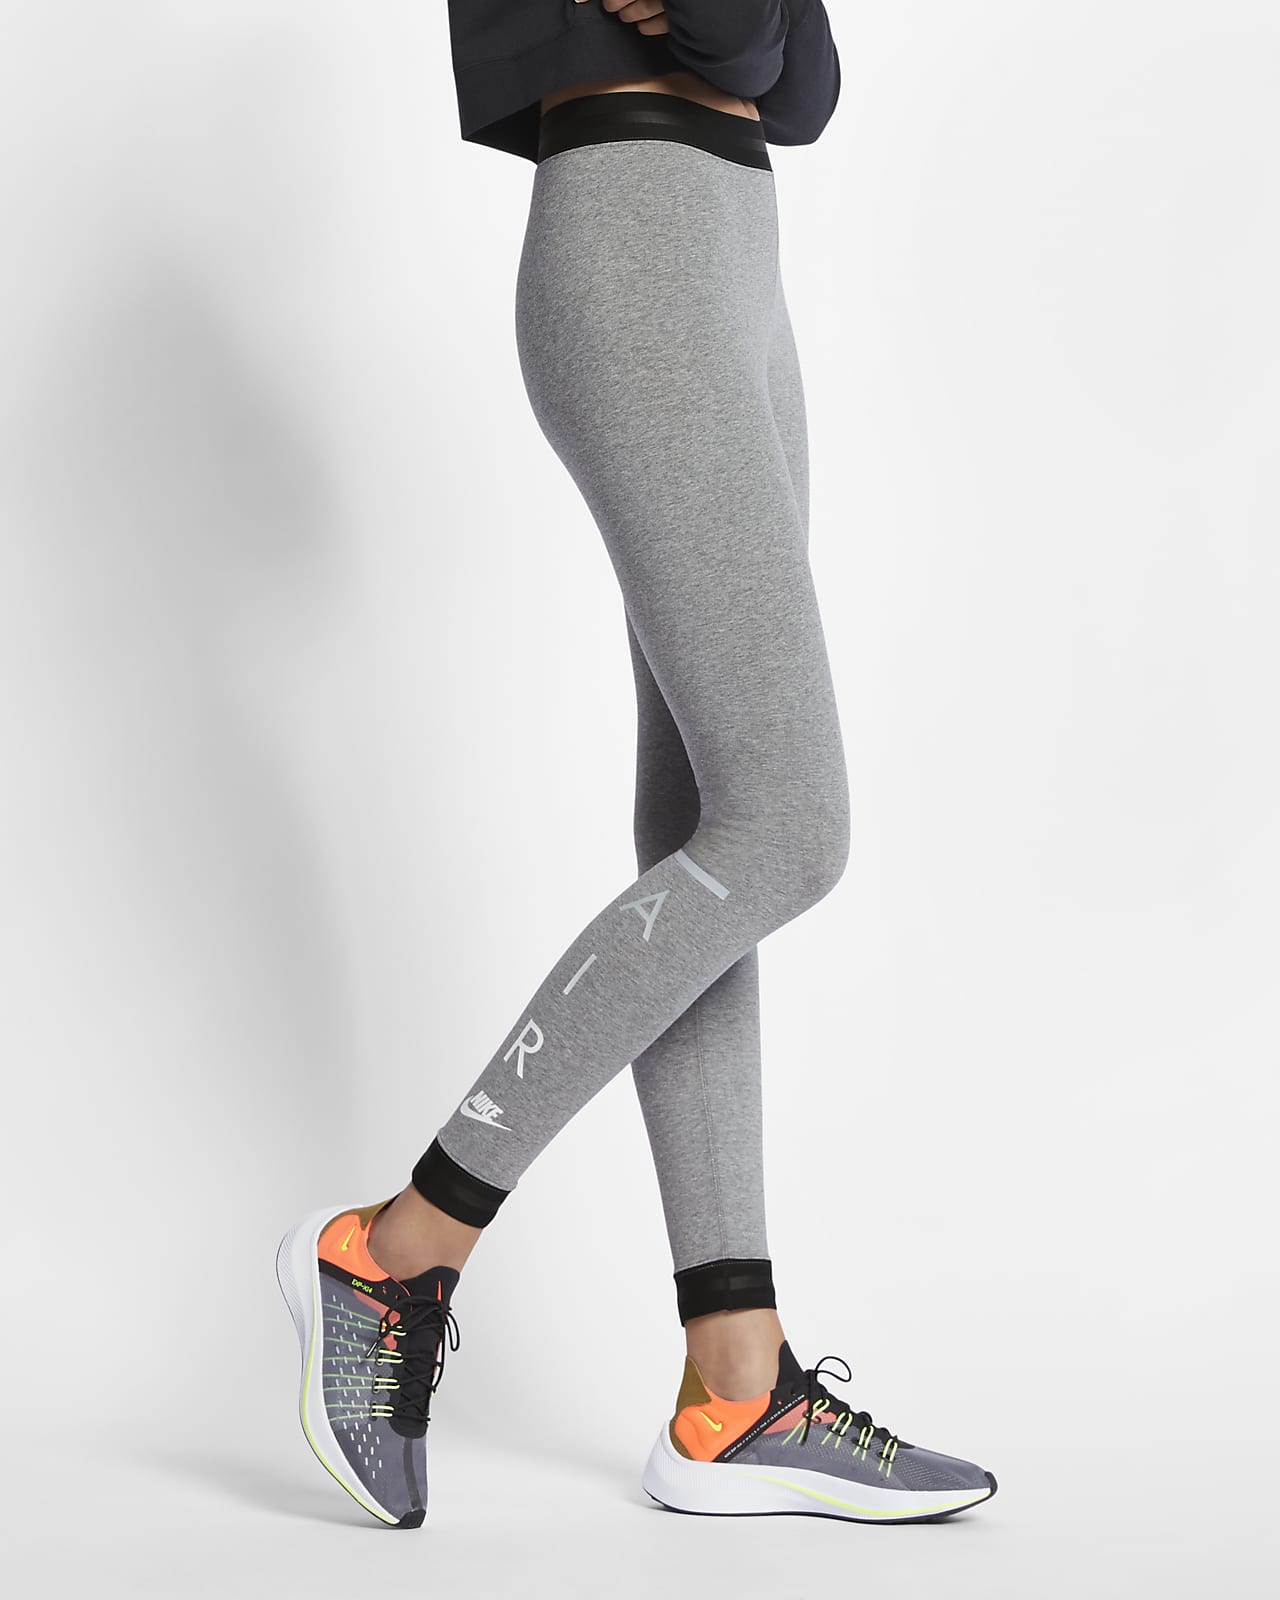 Women's High-Waisted Leggings. Nike CH